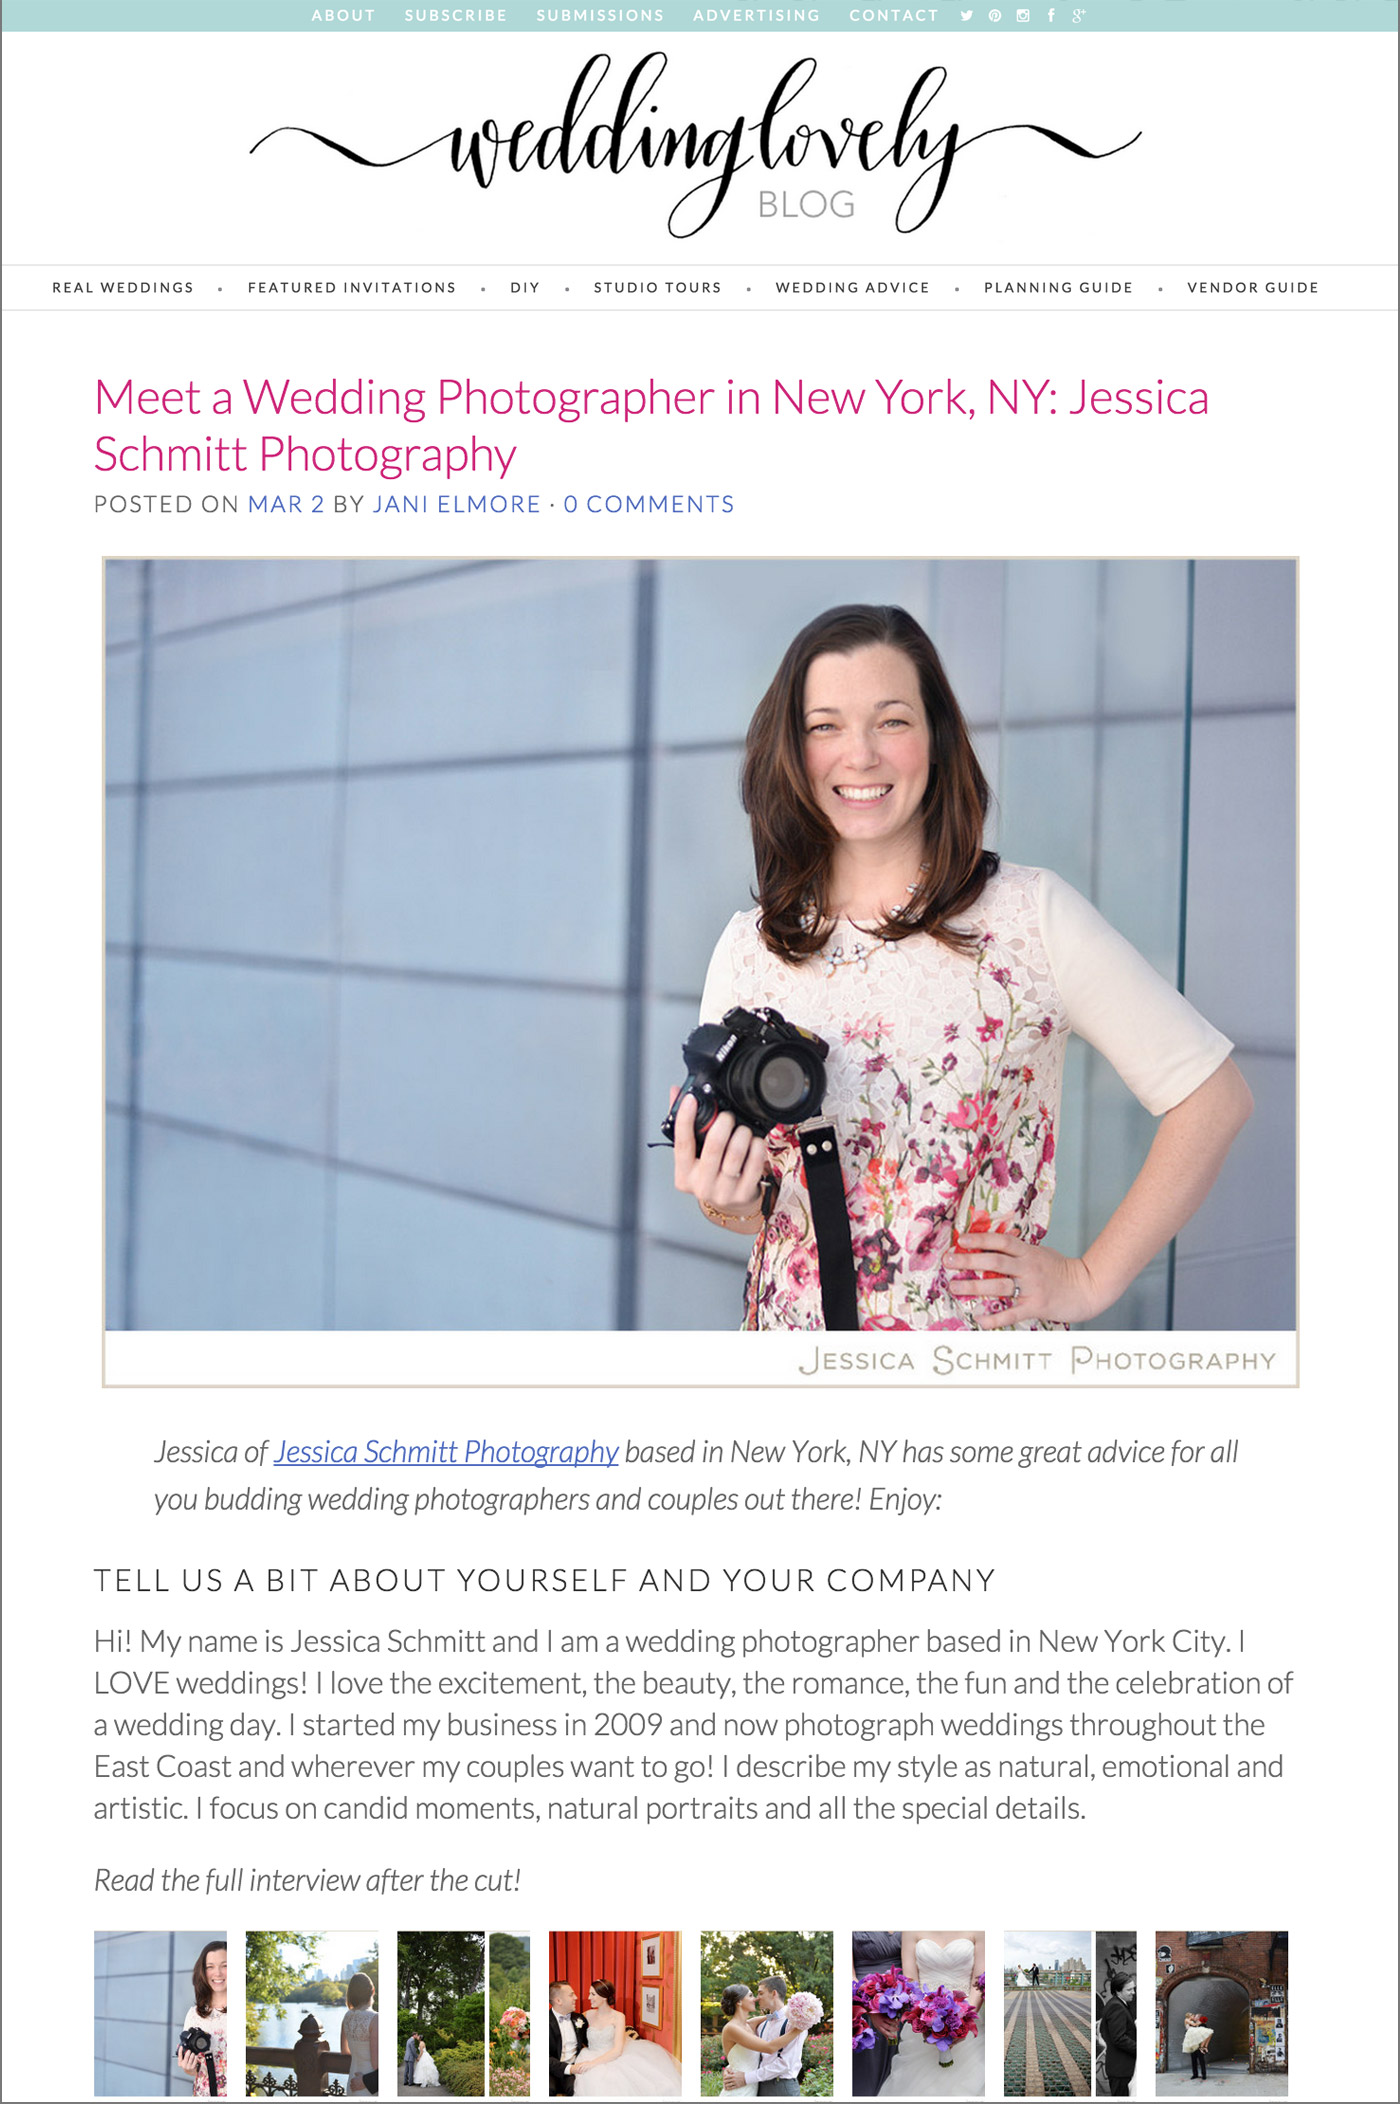 Wedding Lovely Jessica Schmitt Photography